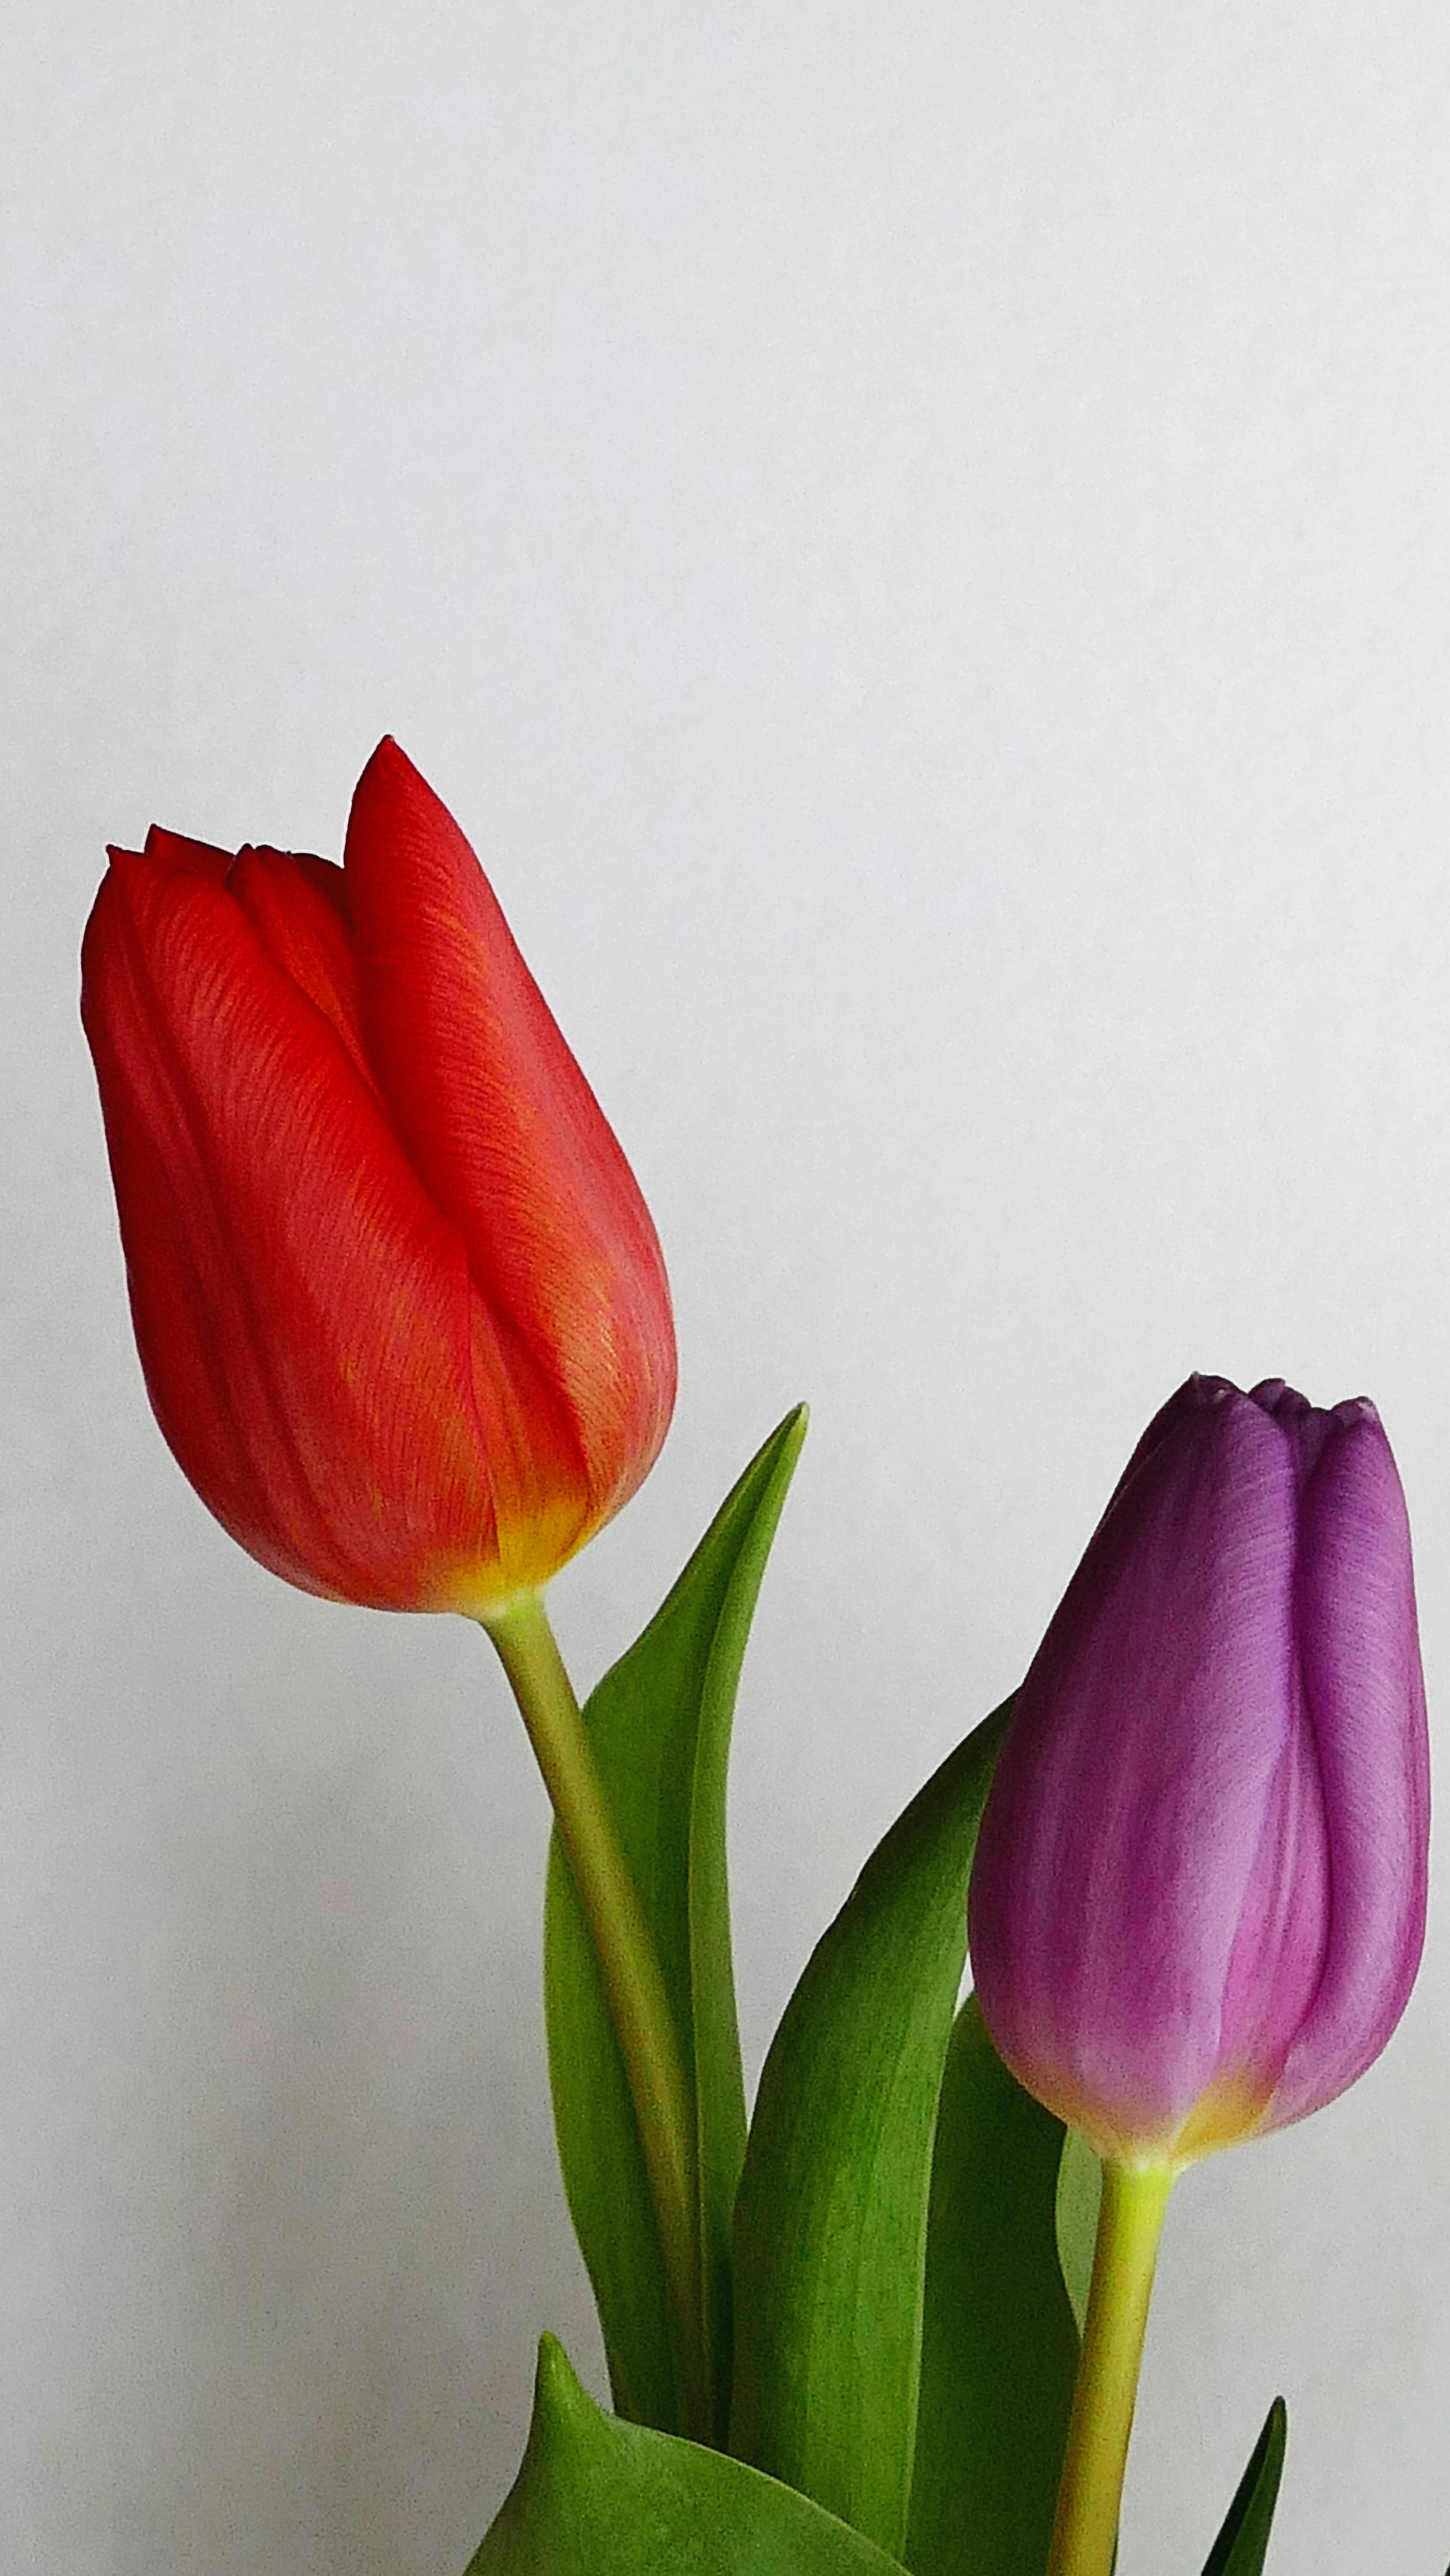 Hoa Tulip Màu Tím Vàng Những - Ảnh miễn phí trên Pixabay - Pixabay